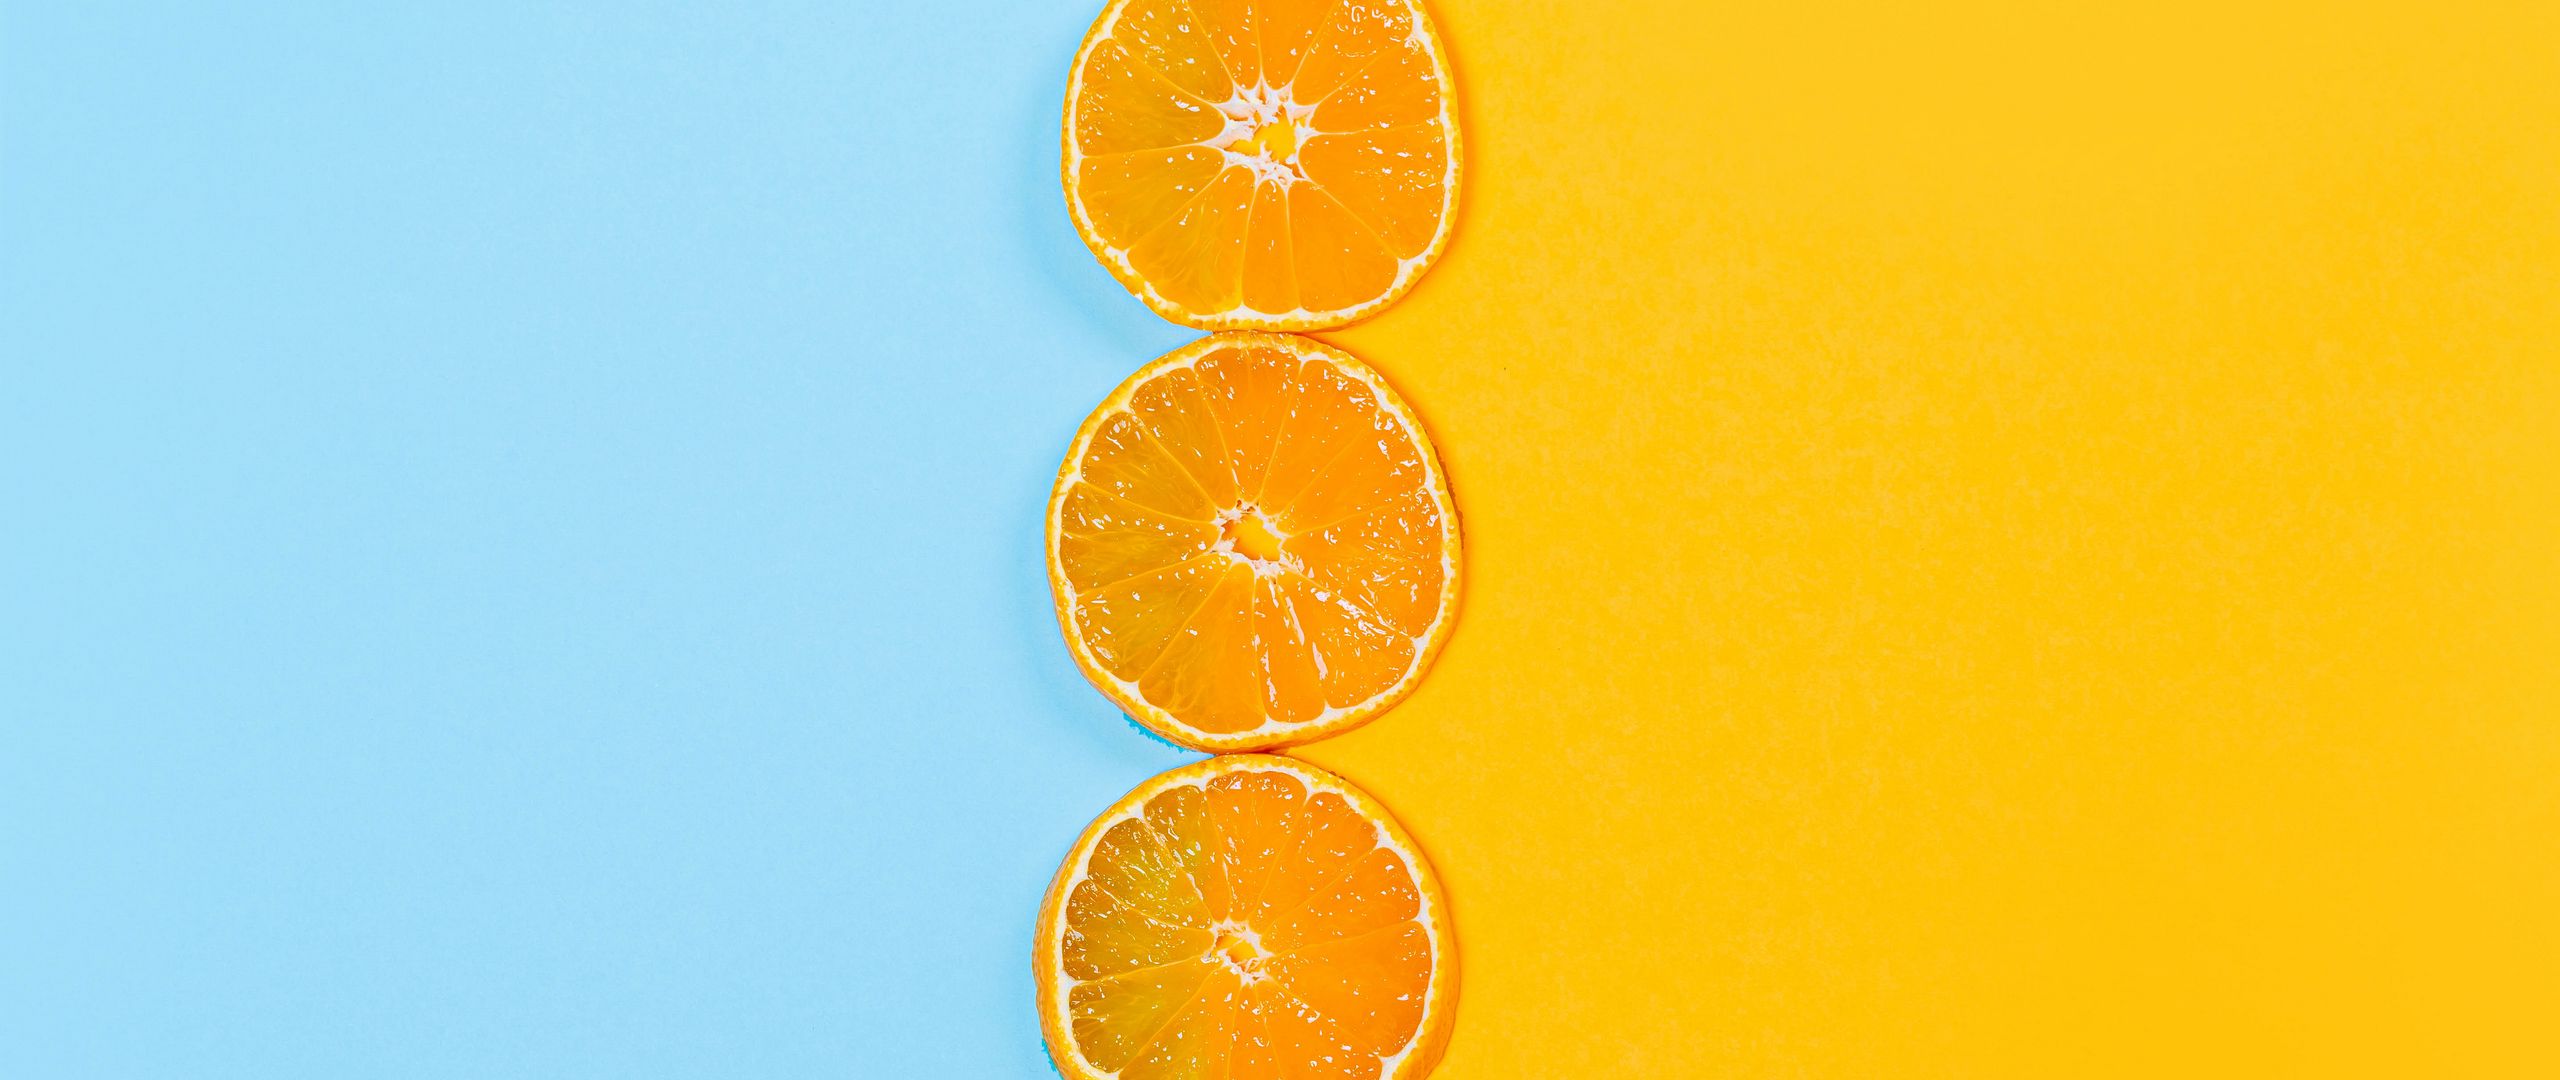 2560x1080 Wallpaper orange, slices, fruit, citrus